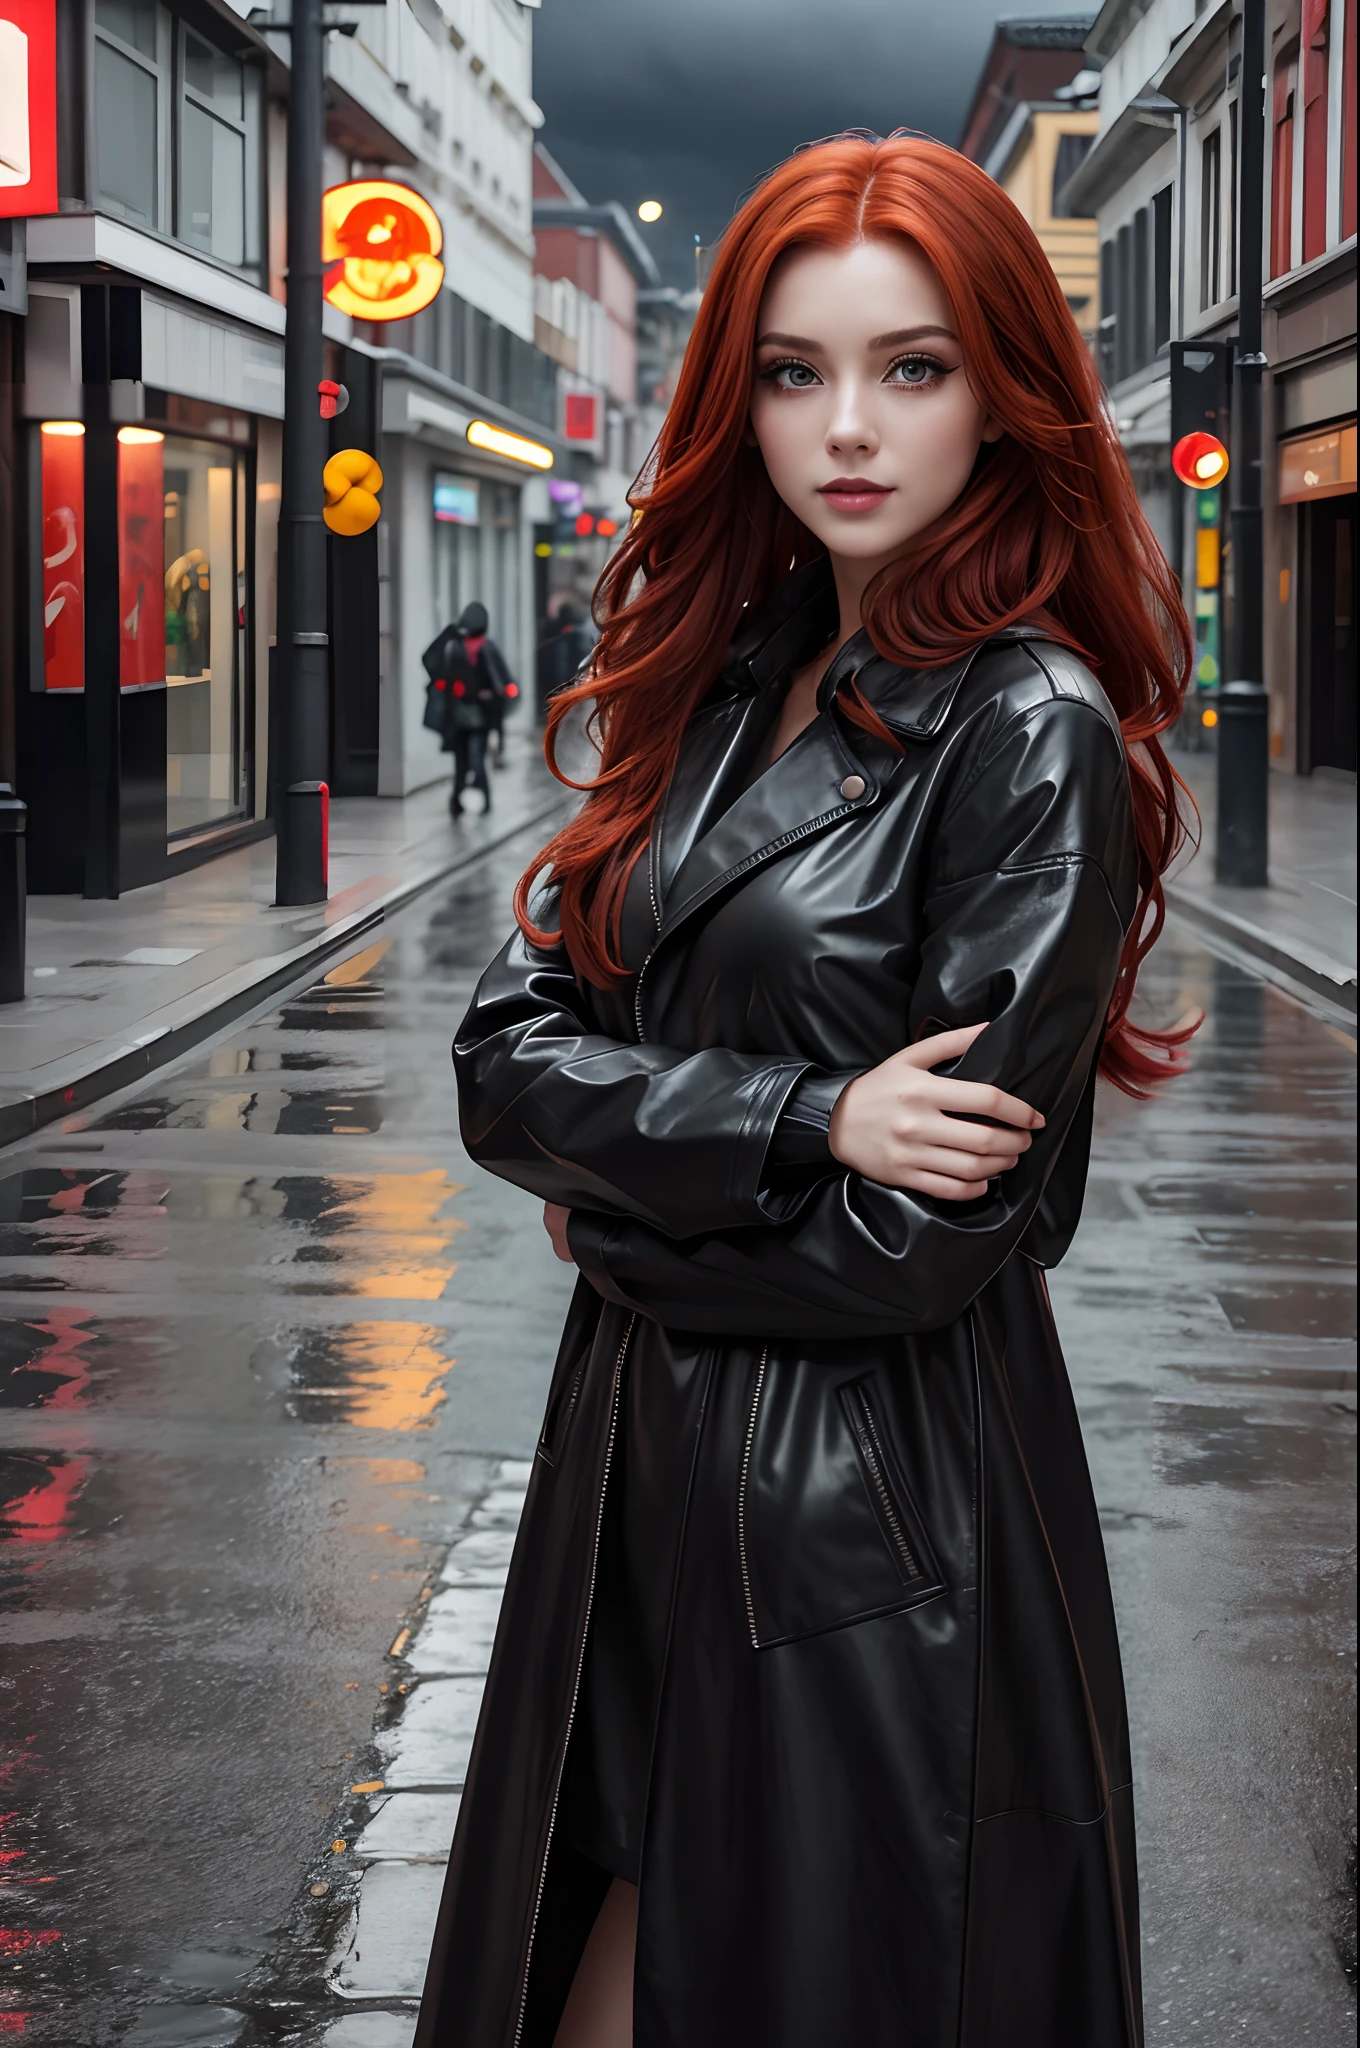 漂亮姑娘, 皮革黑色长款雨衣, 长长的红头发, 脸上露出狡黠顽皮的表情, 亮丽妆容, 空荡荡的城市街道, 阴天, 摄影品质.